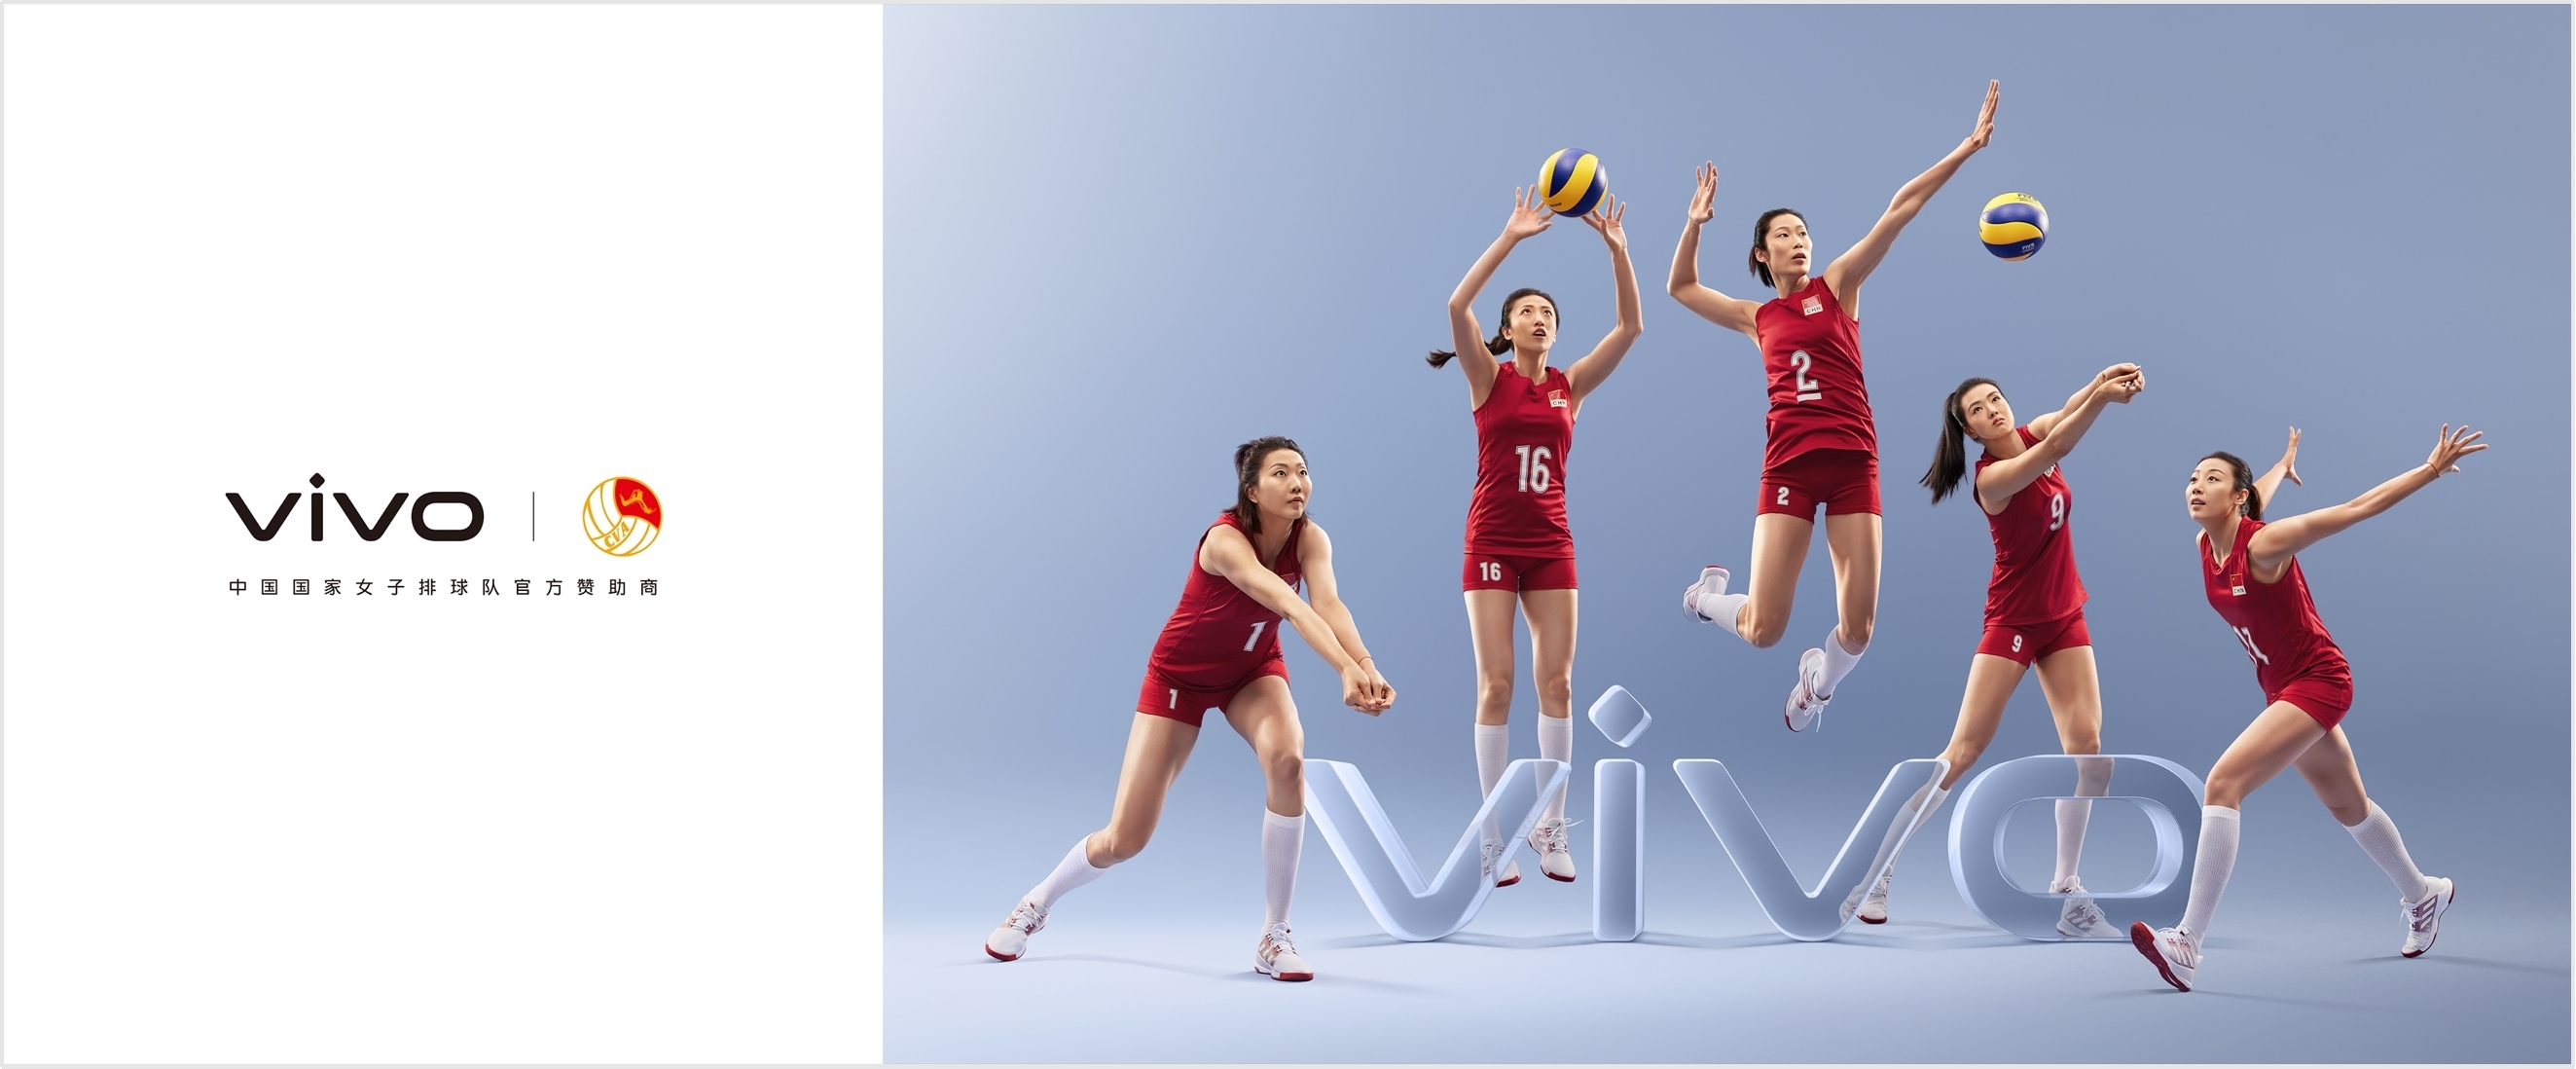 以体育之美展现人文之悦  vivo成为中国国家女子排球队官方赞助商